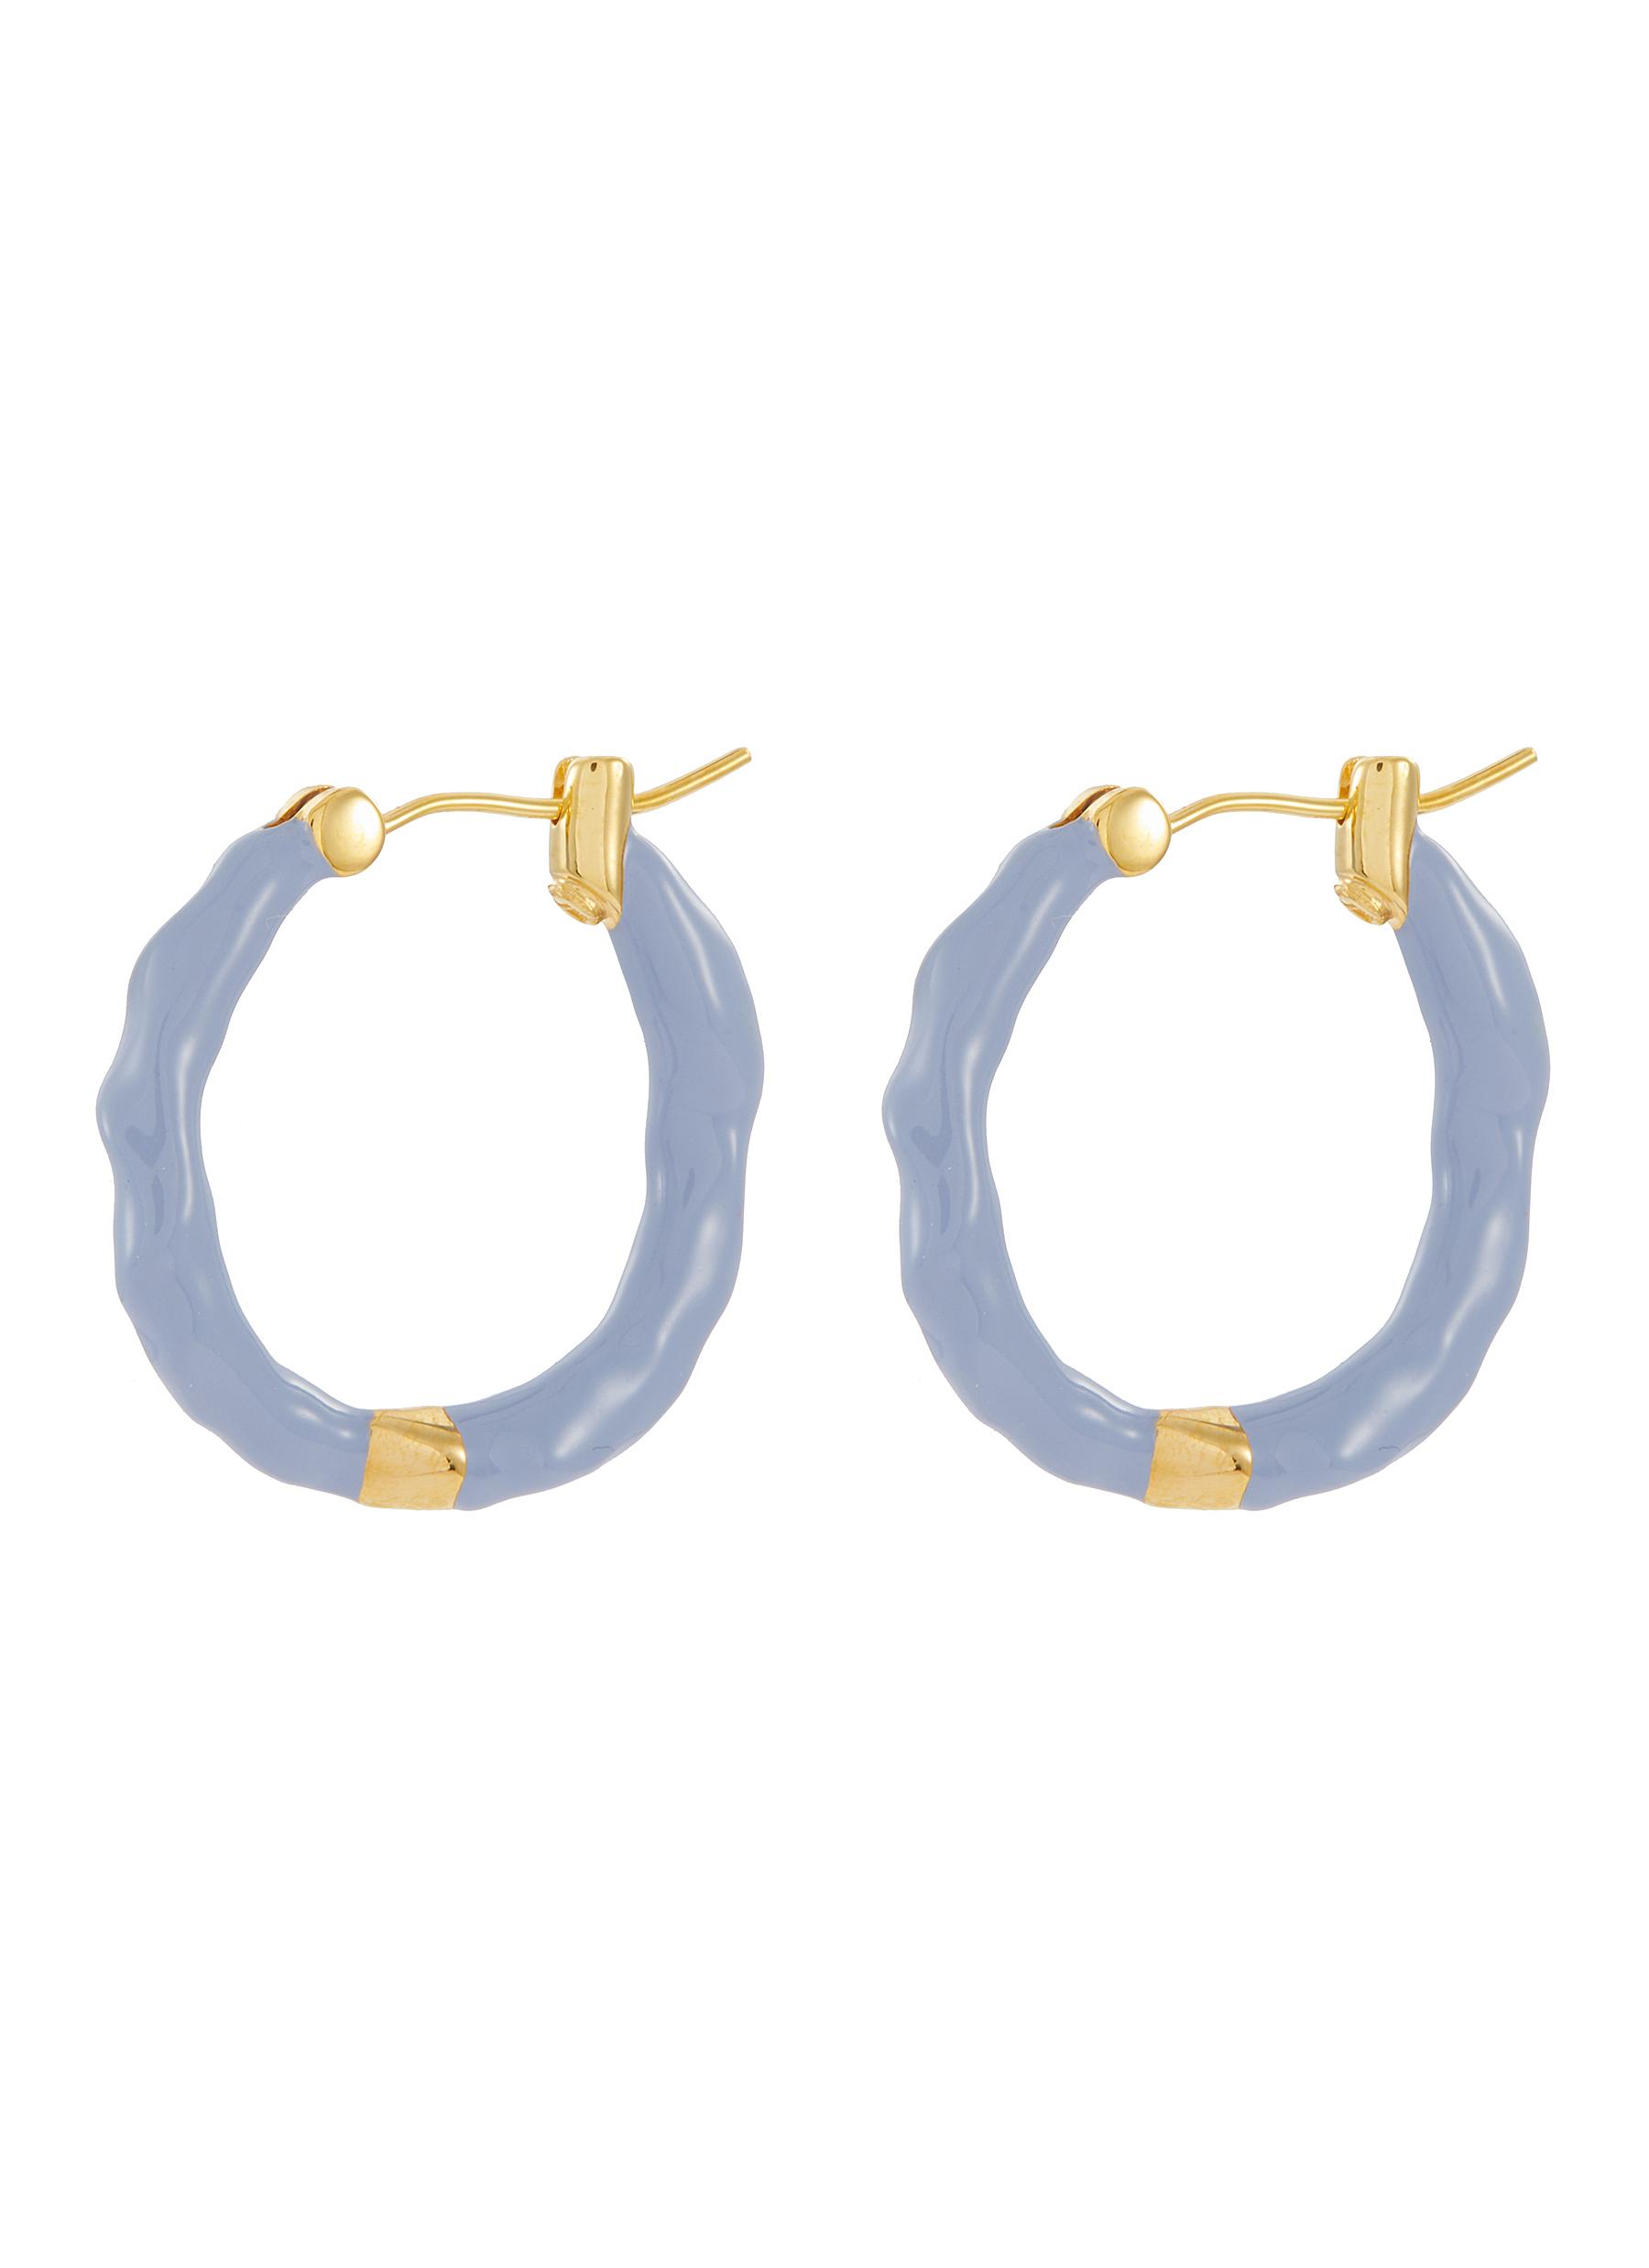 JOANNA LAURA CONSTANTINE 'Waves' enamelled large hoop earrings